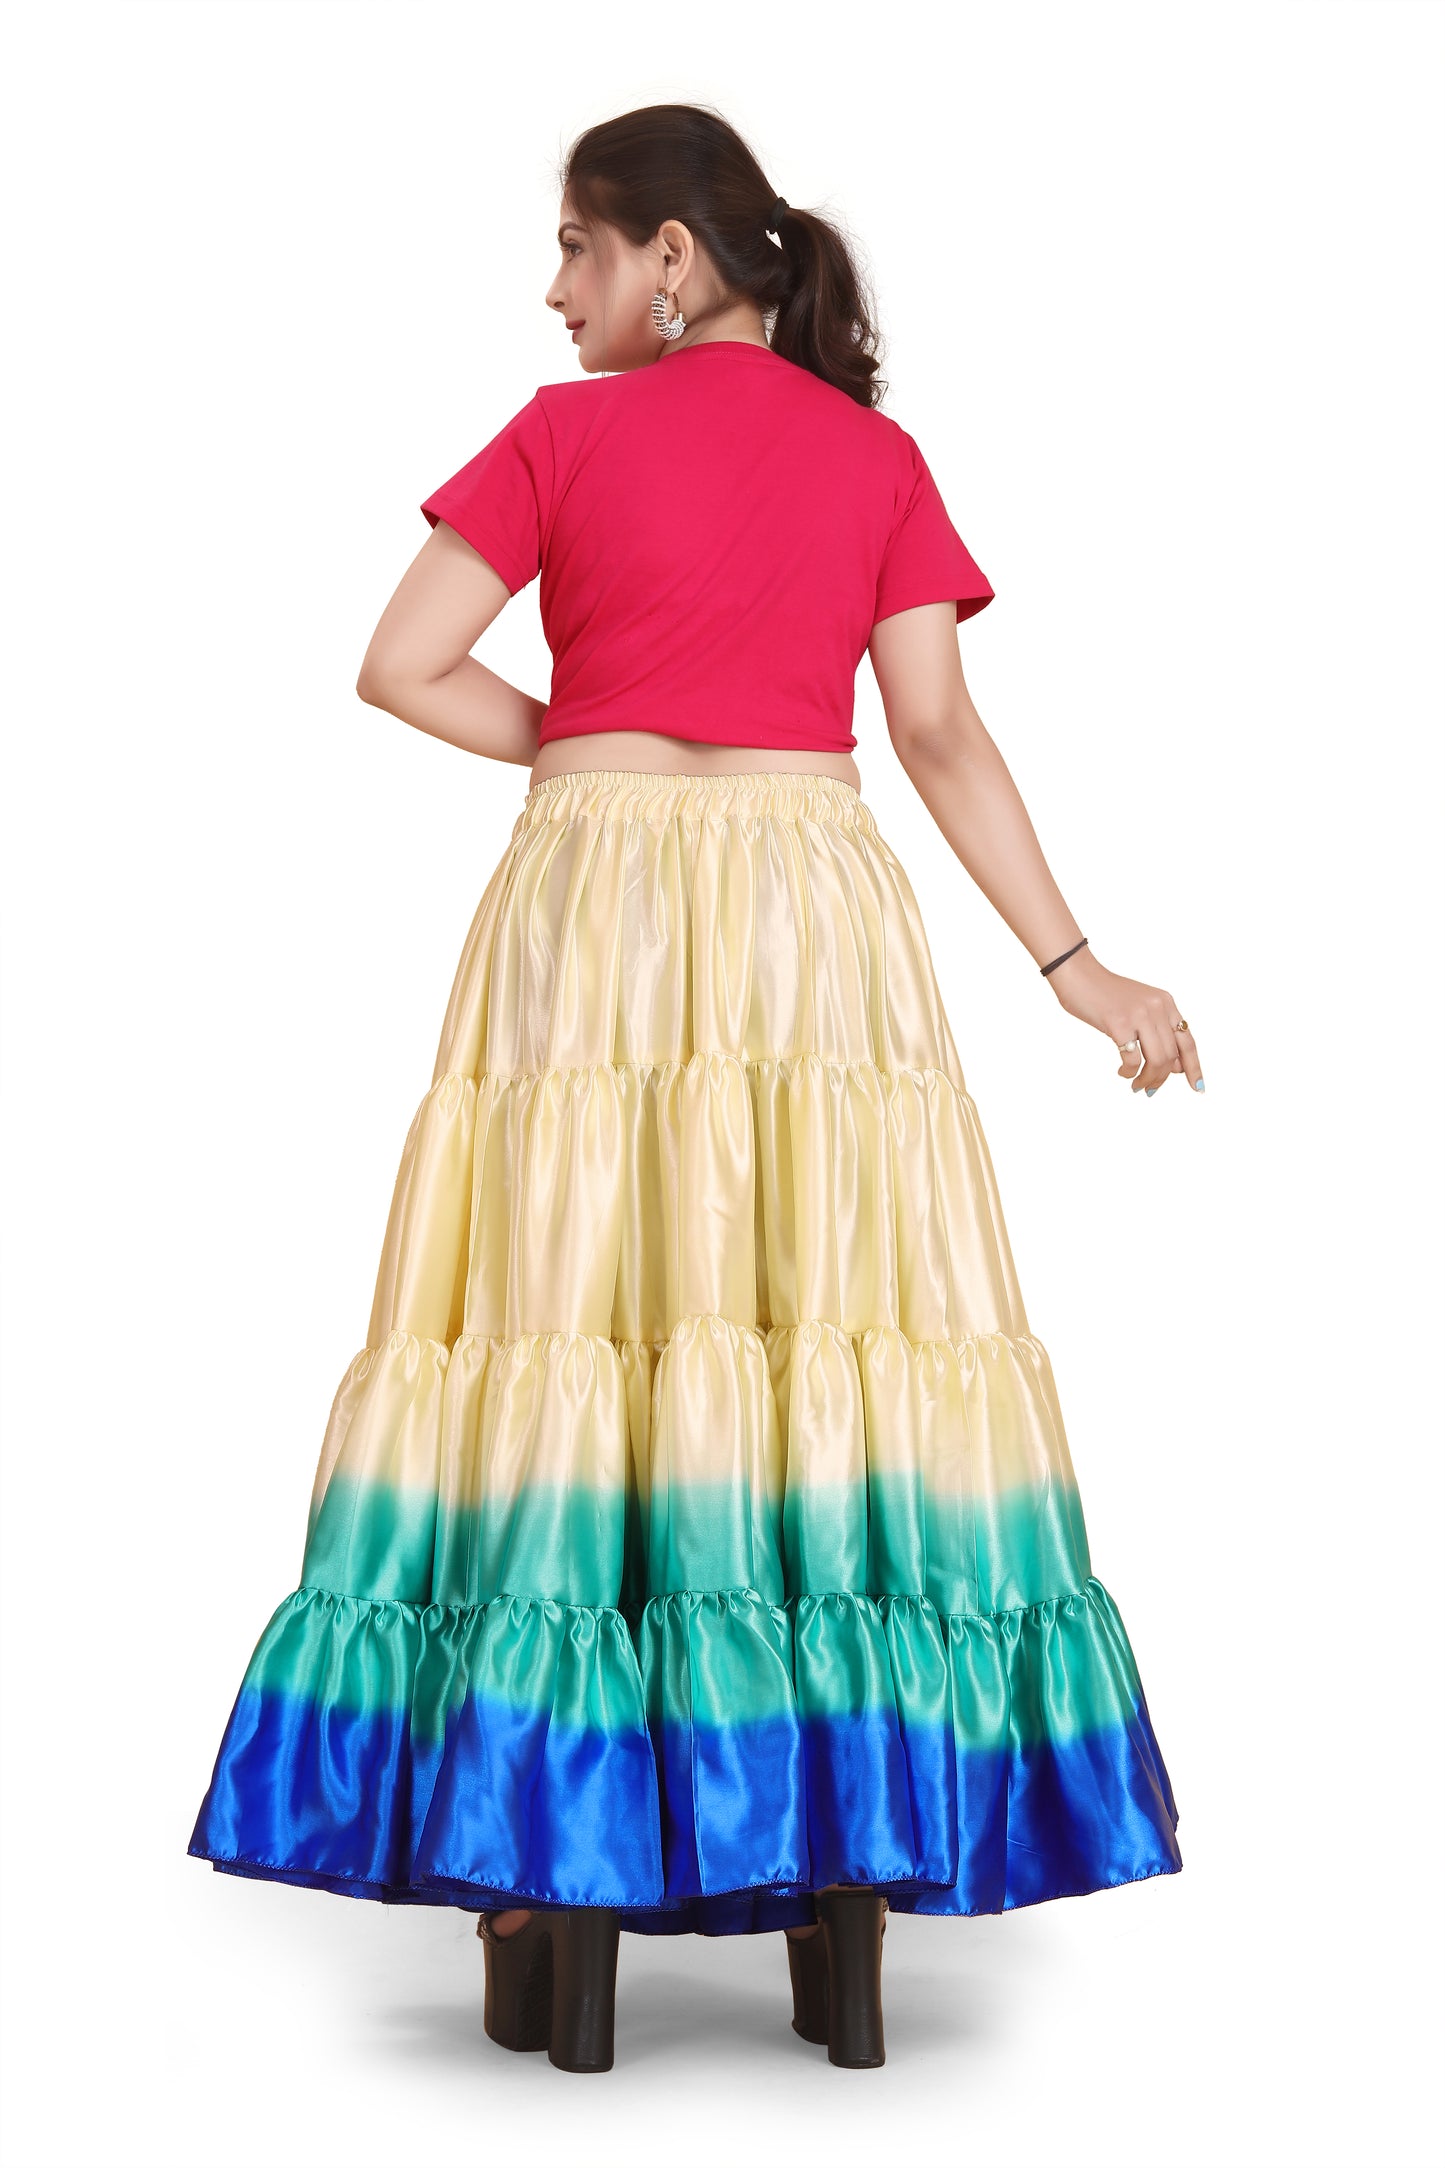 Satin 25 Yard 4 Tier Skirt Multi Color Skirt Belly Dance Skirt KF14-1